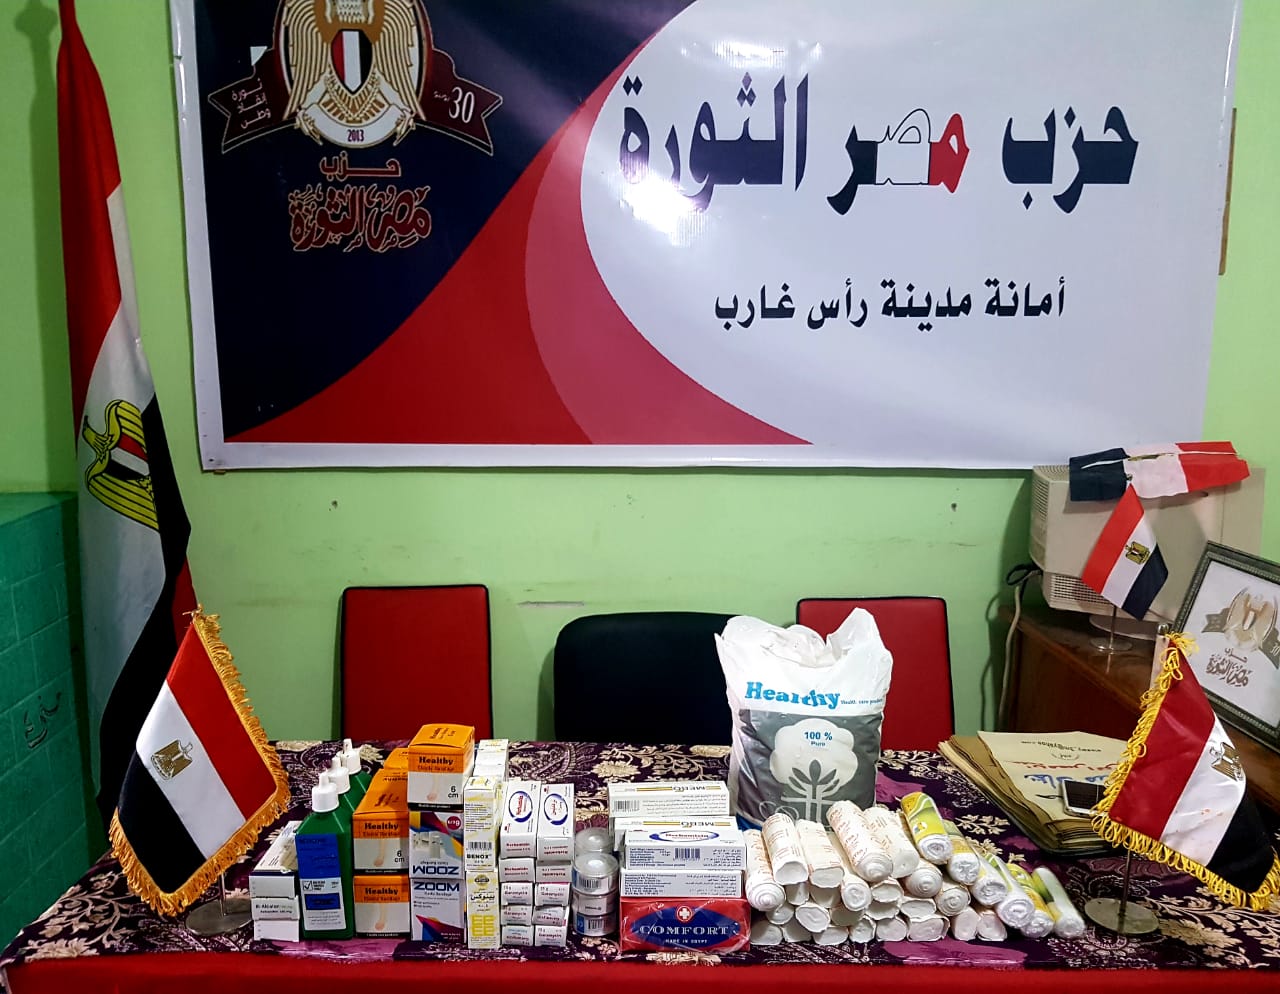   أمانة مصر الثورة يتبرع بكمية من الإسعافات لمستشفى رأس غارب